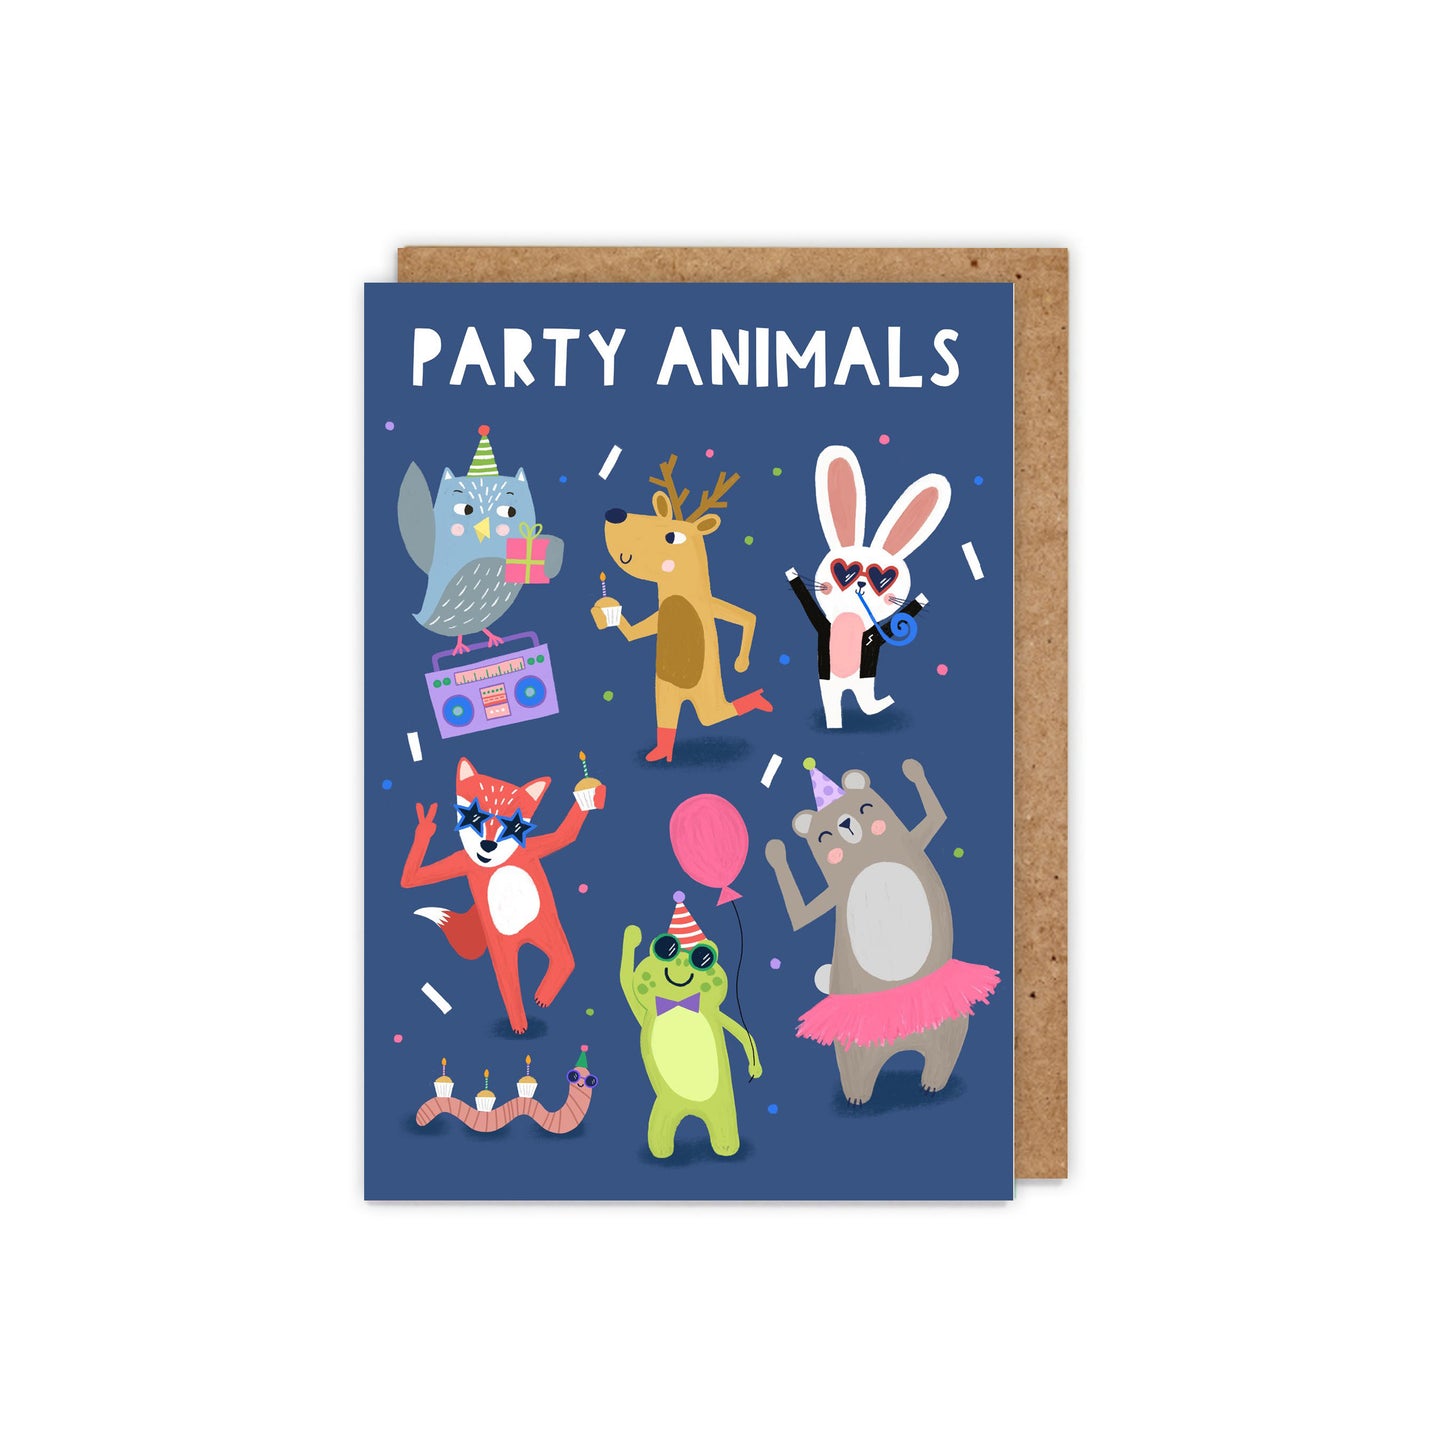 Party Animals! Children's Birthday Card